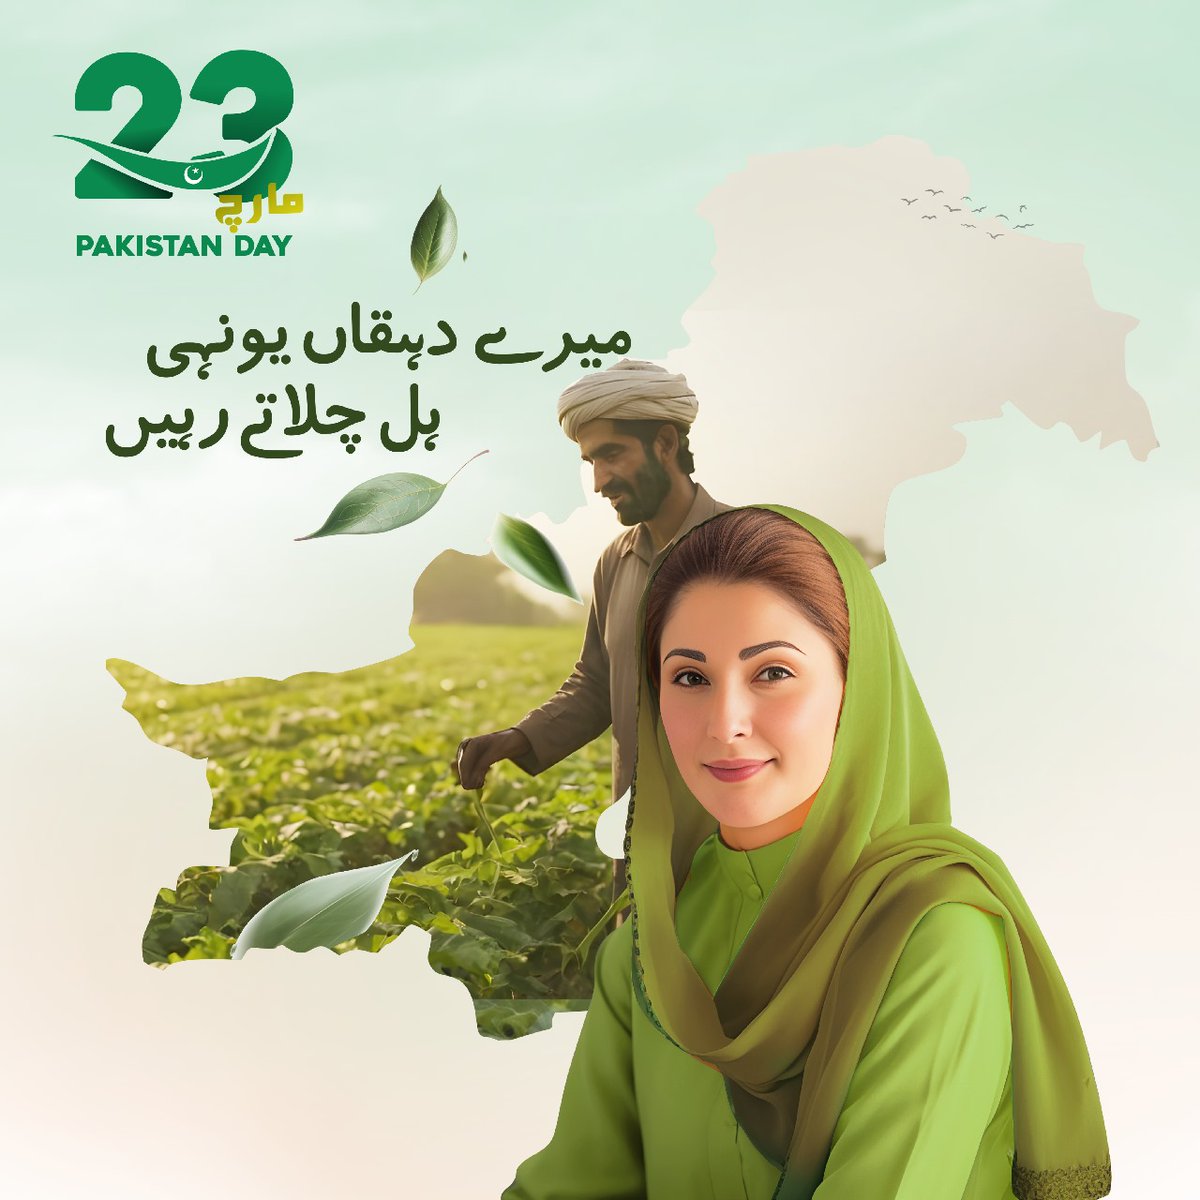 '23 مارچ یوم پاکستان' میرے دہقاں یونہی ہل چلاتے رہیں میری مٹی کو سونا بناتے رہیں